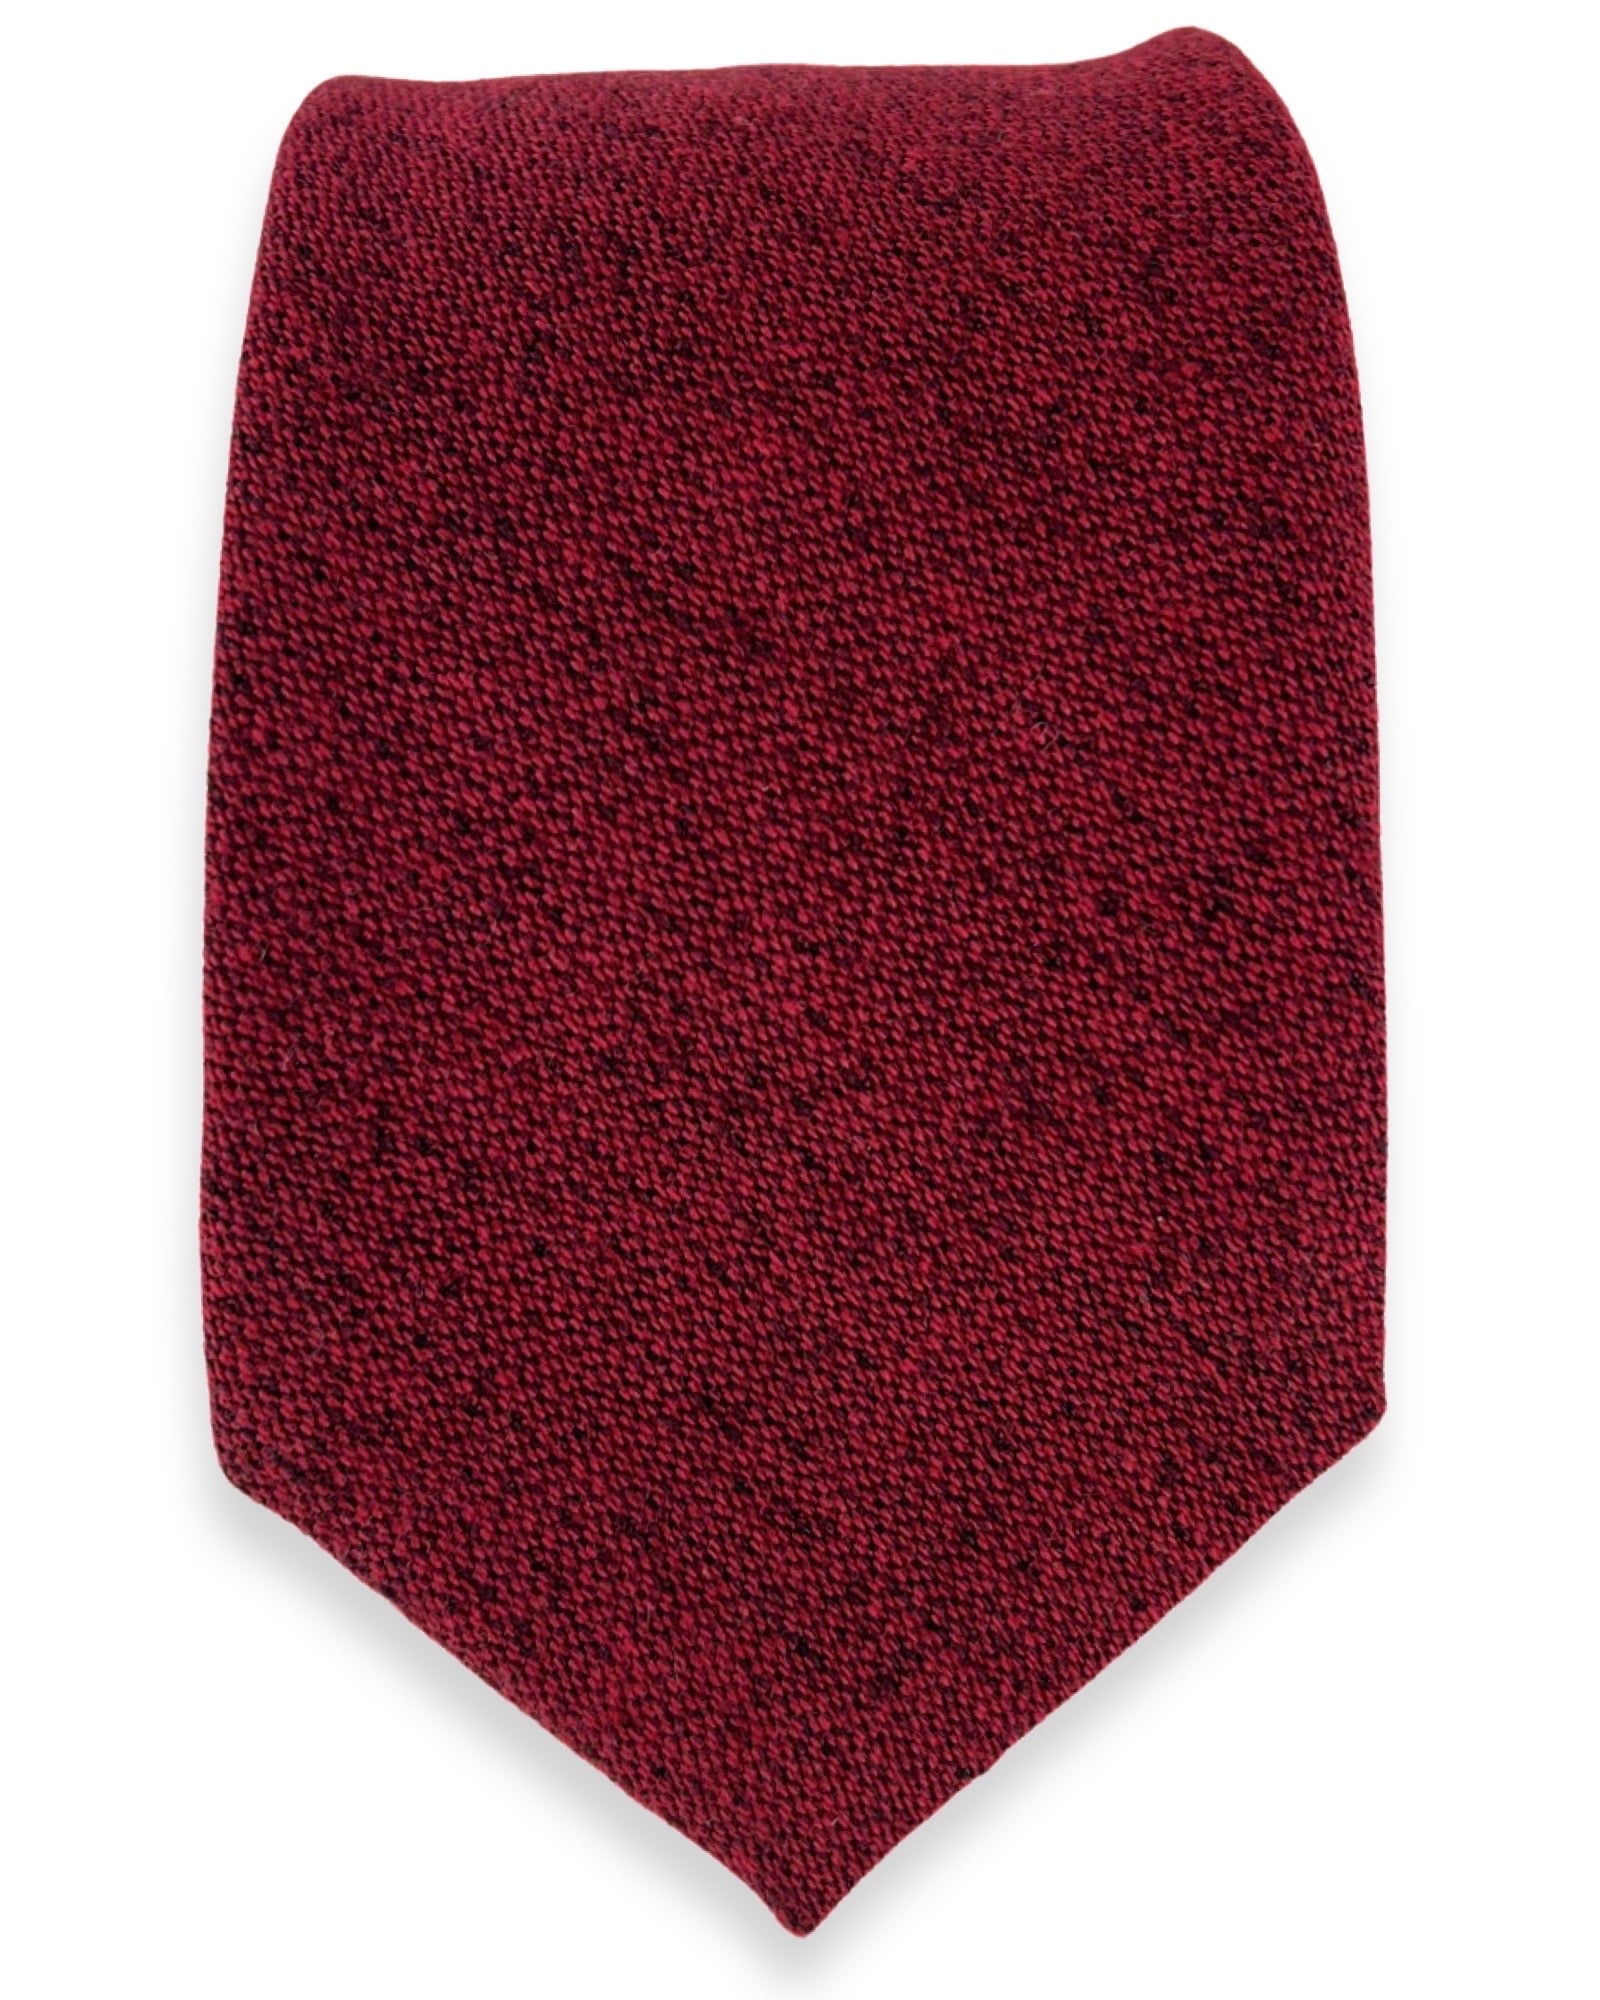 DÉCLIC Crotone Plain Tie - Red